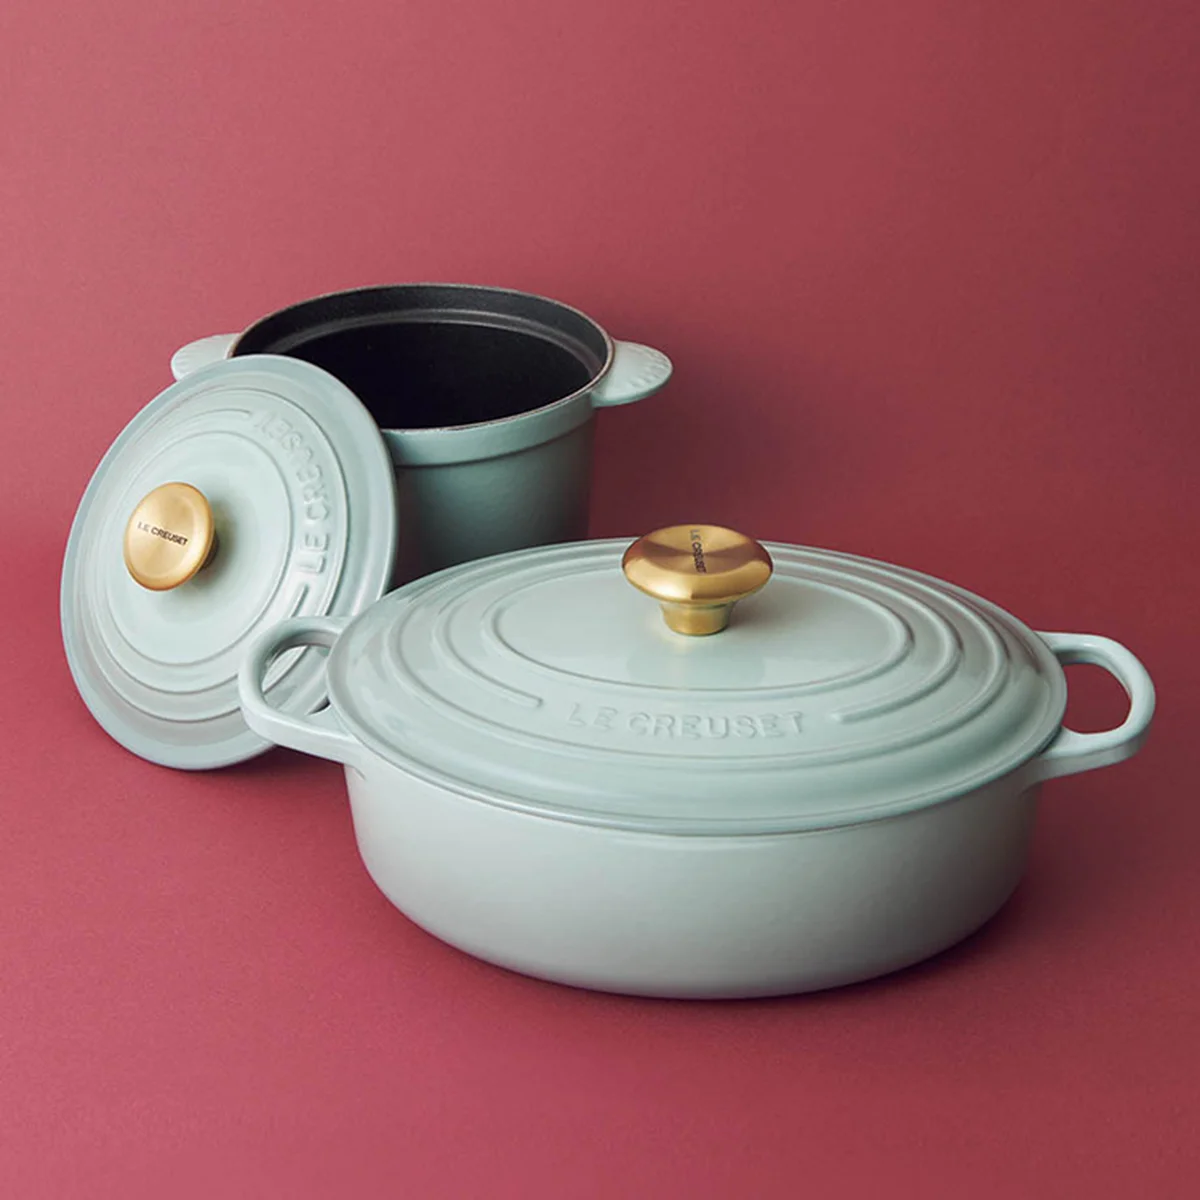 ル・クルーゼの鋳物ホーロー鍋